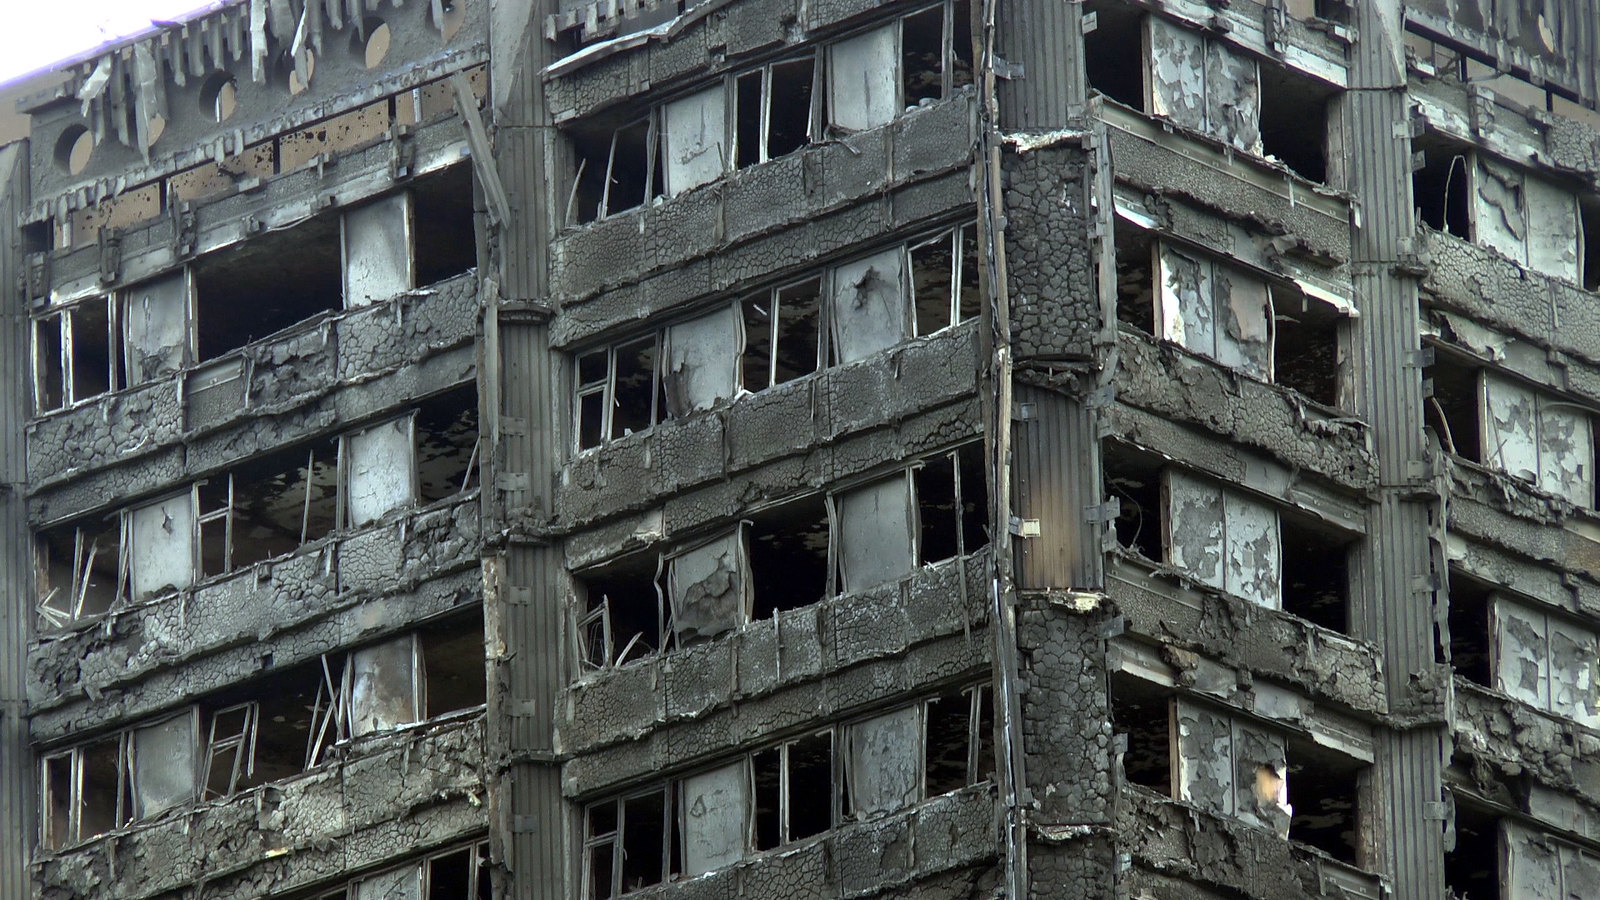 The burnt shell of Grenfell Tower, taken on June 16, 2017